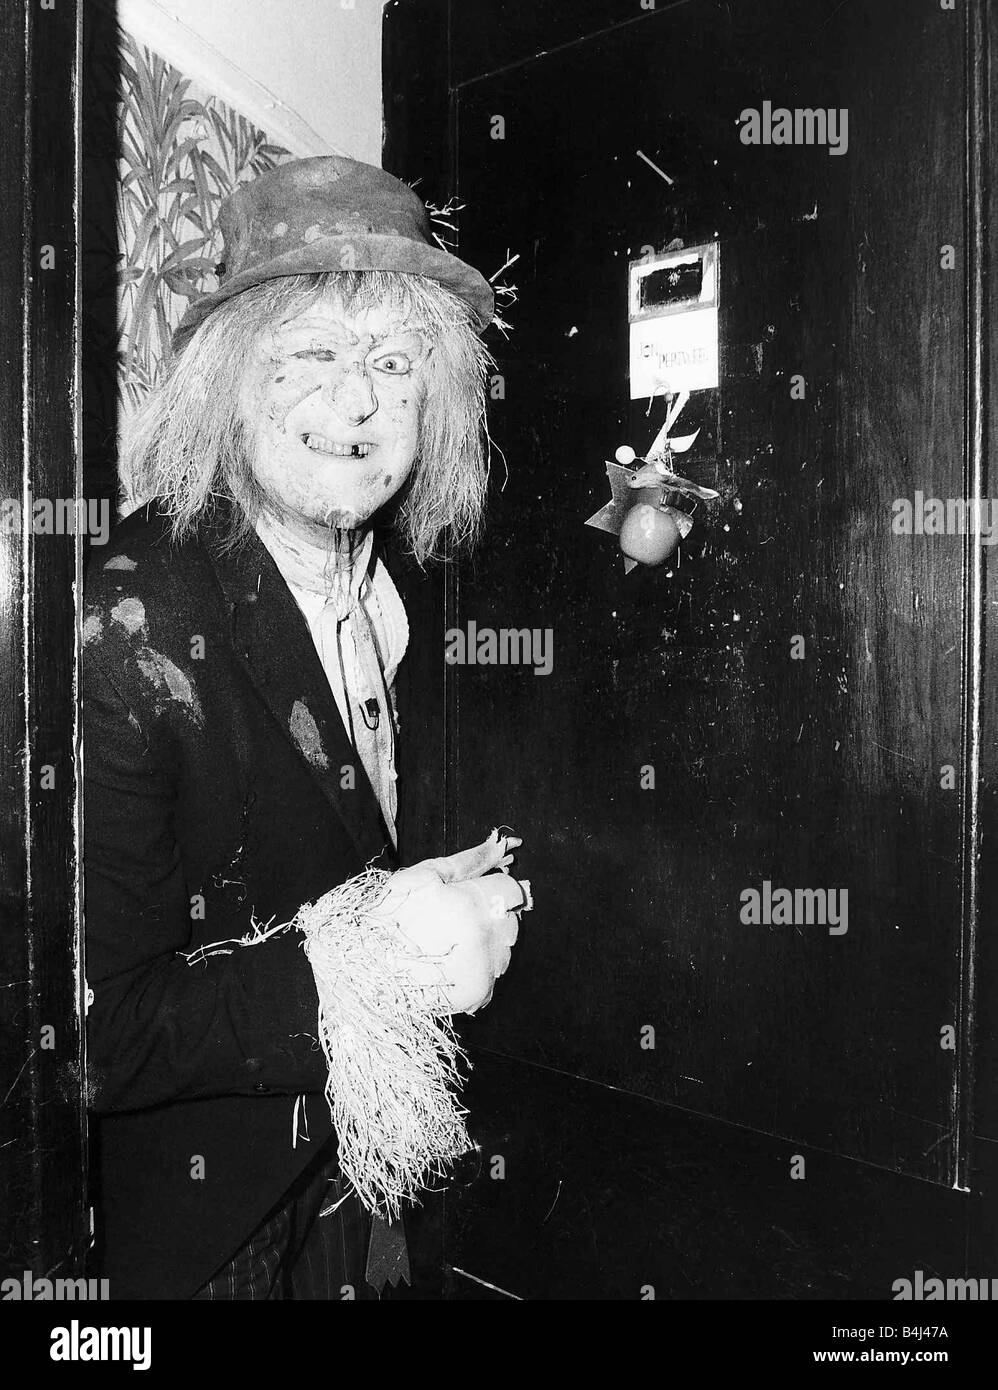 Jon Pertwee actor in costume as Worzel Gummidge at his dressing room door Cambridge Theatre London December 1981 Dbase MSI Stock Photo